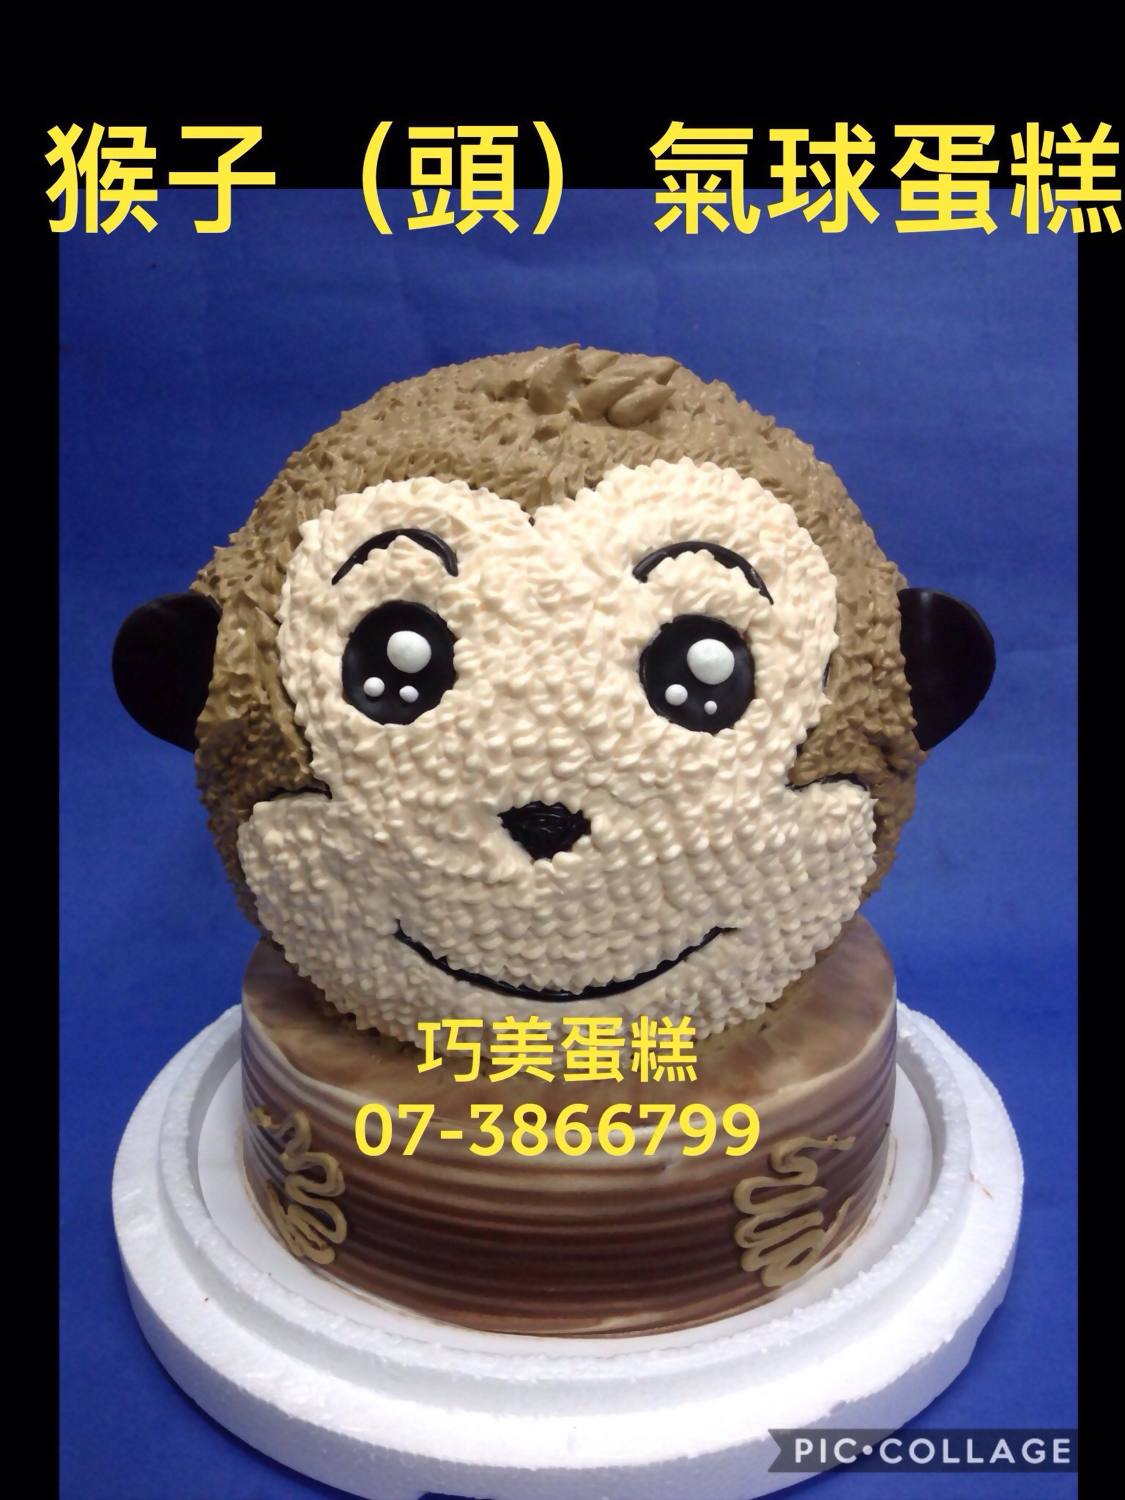 生肖猴生日蛋糕图片-图库-五毛网